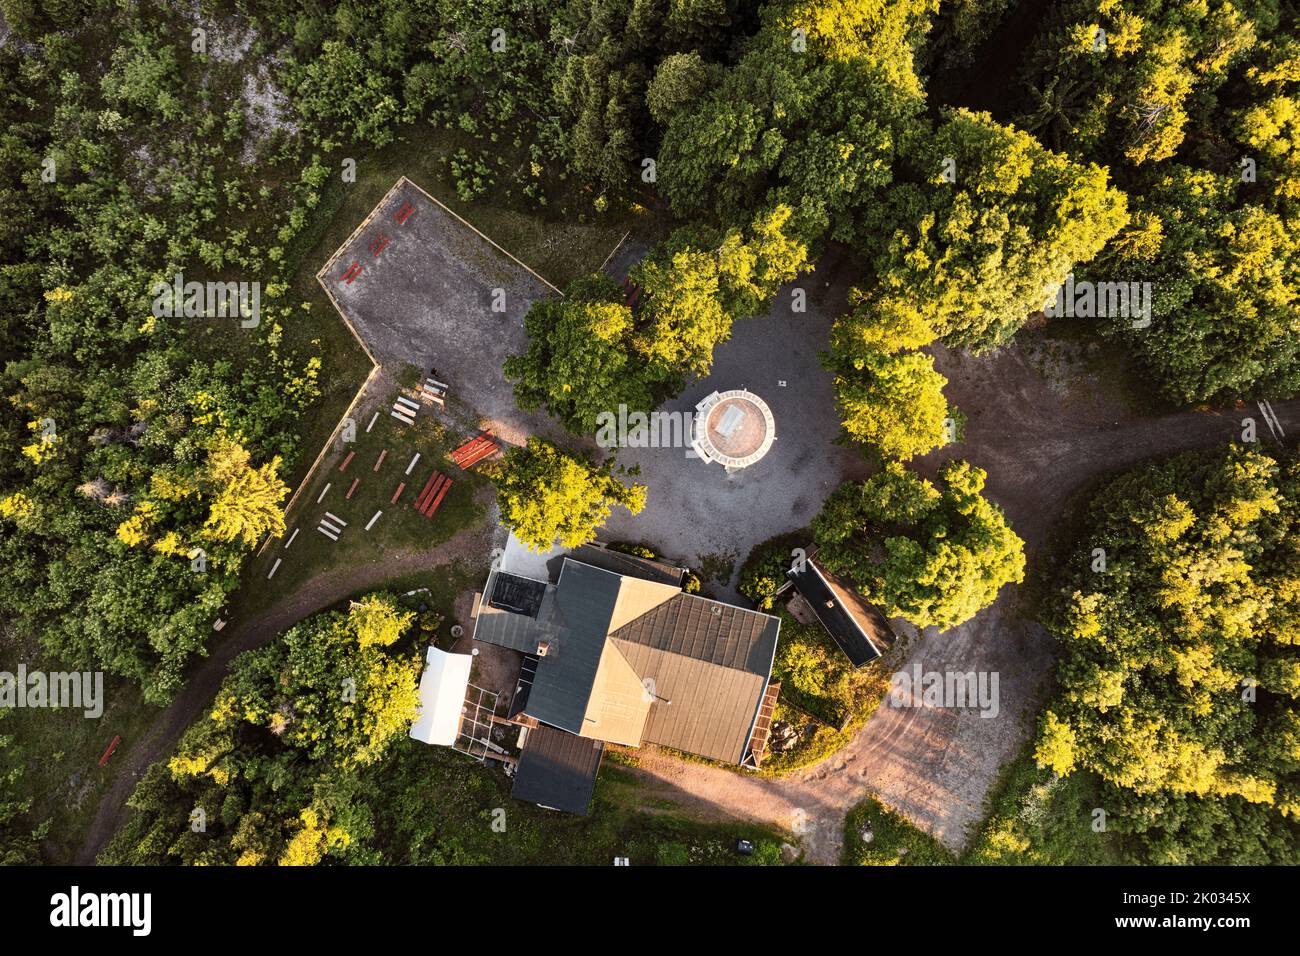 Alemania, Turingia, Ilmenau, Kickelhahn, torre de observación, posada, lugar de descanso, bosque, vista superior, vista aérea Foto de stock